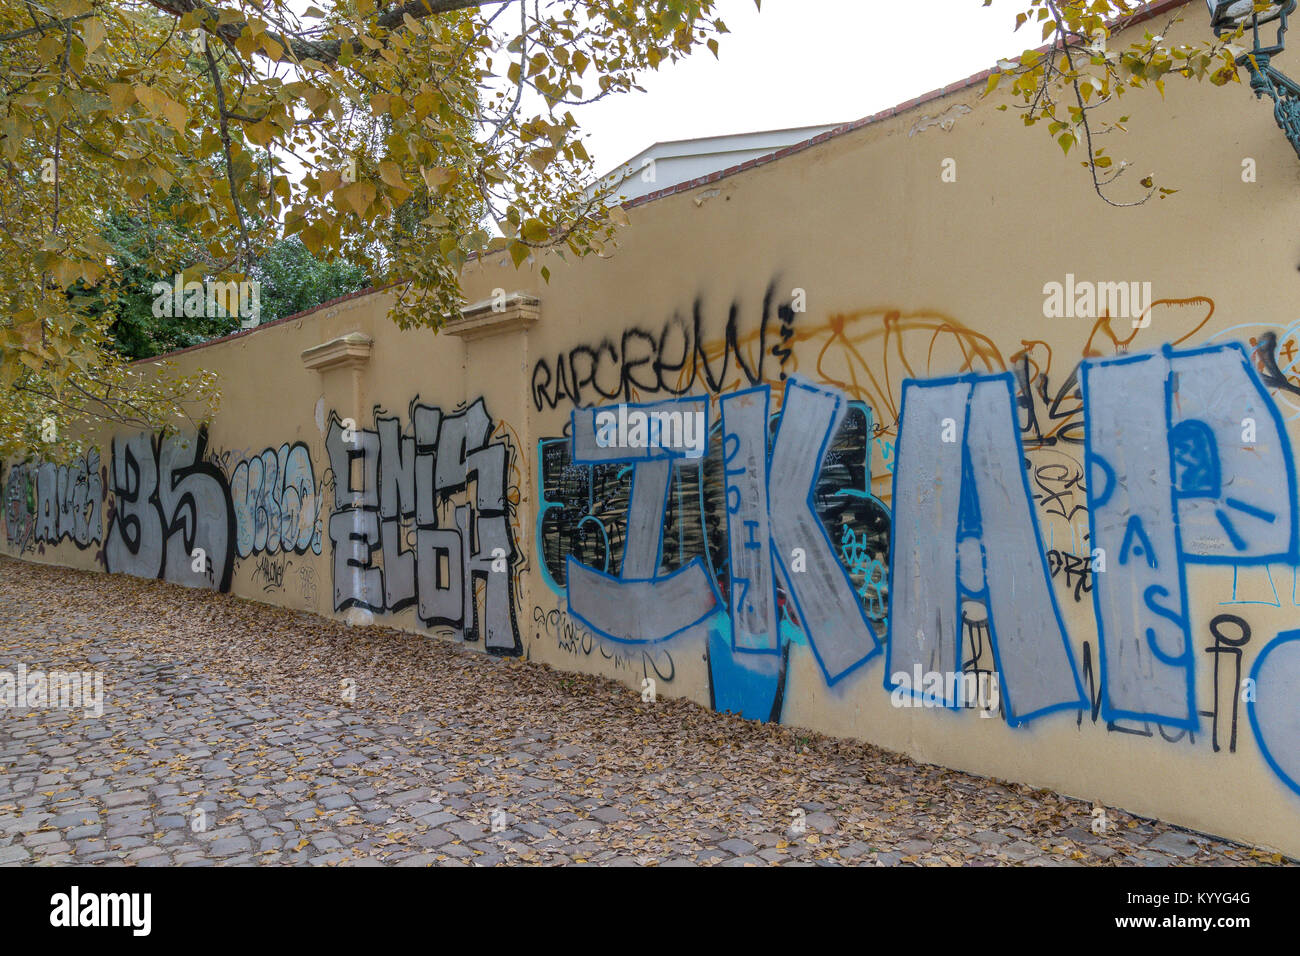 Un muro spruzzato di graffiti che corre lungo una strada acciottolata coperta di foglie autunnali a Praga, Repubblica Ceca Foto Stock